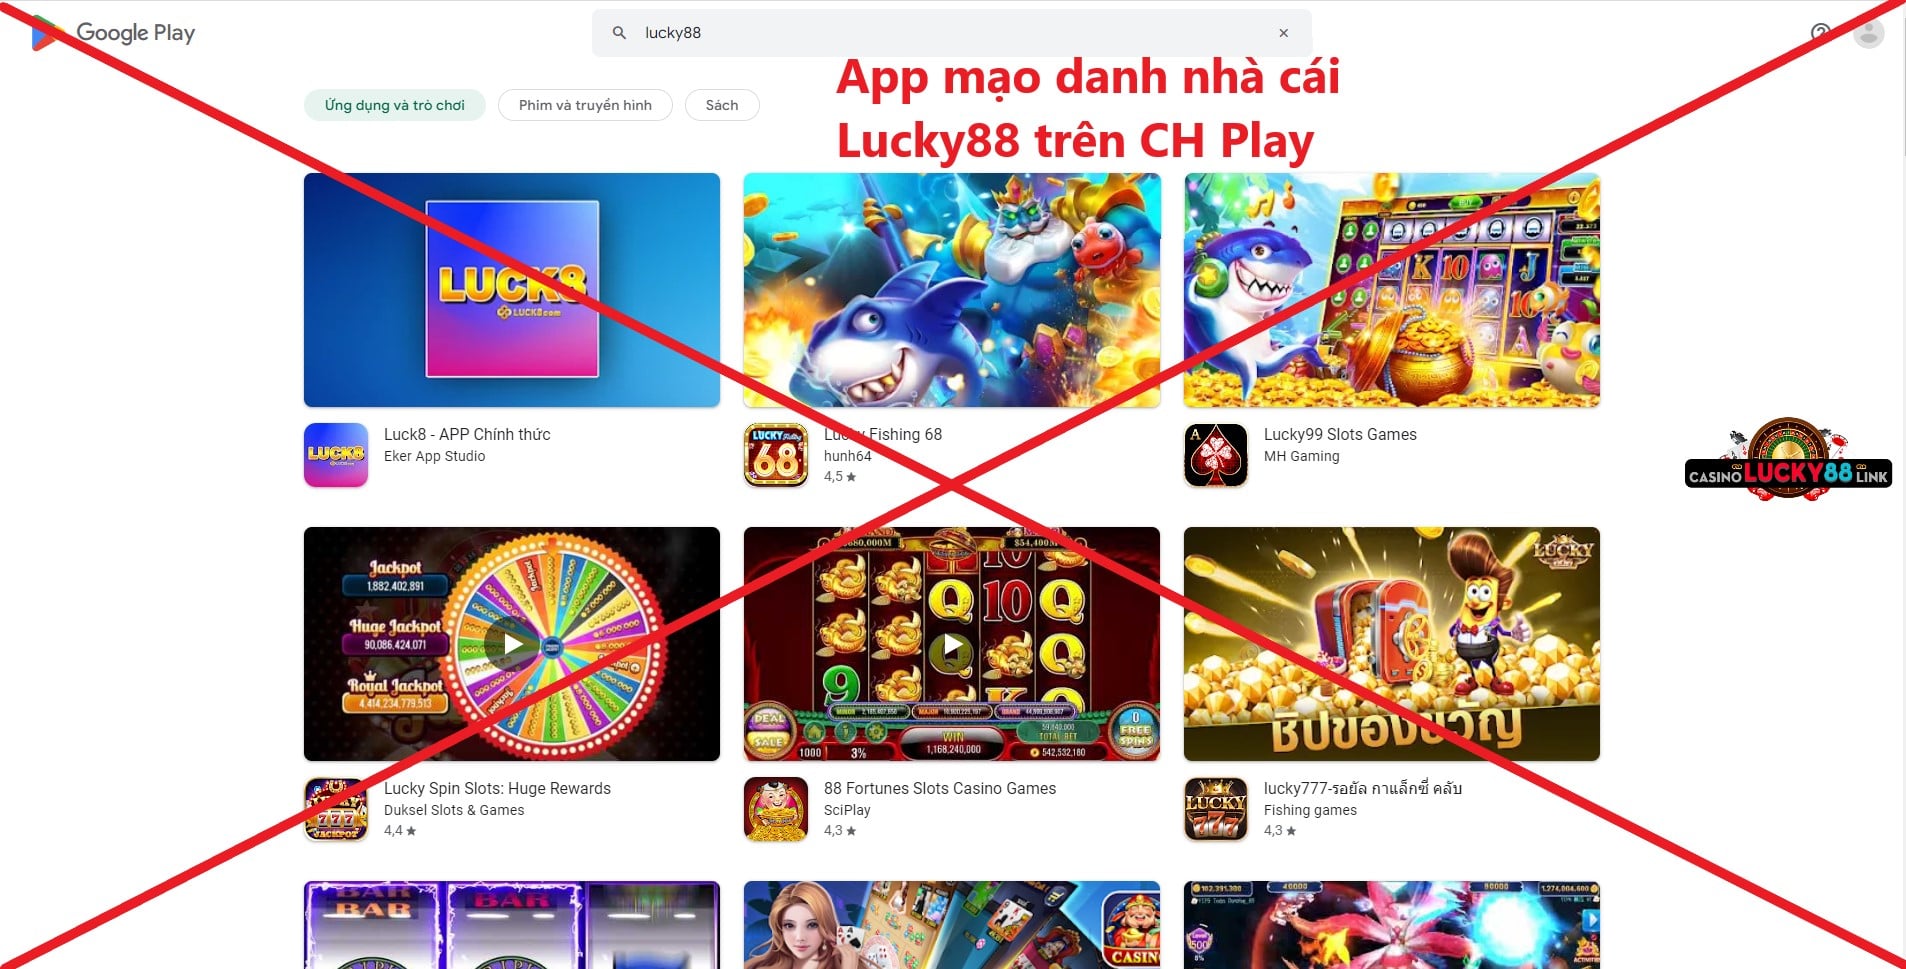 App mạo danh nhà cái Lucky88 trên CH Play